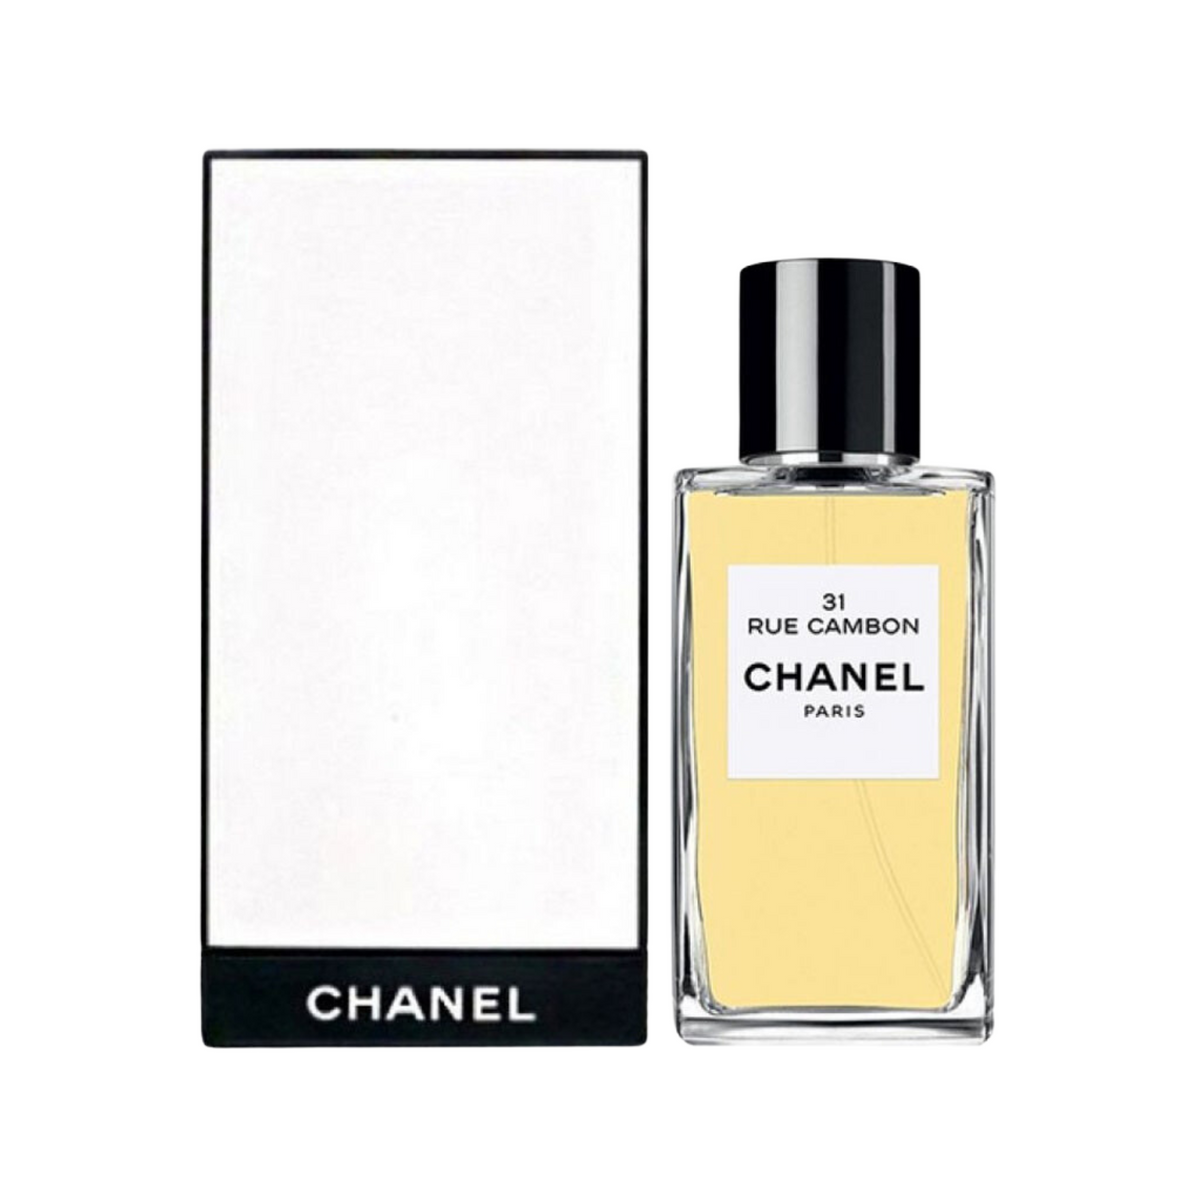 Chanel 31 Rue Cambon Eau De Parfum for Women